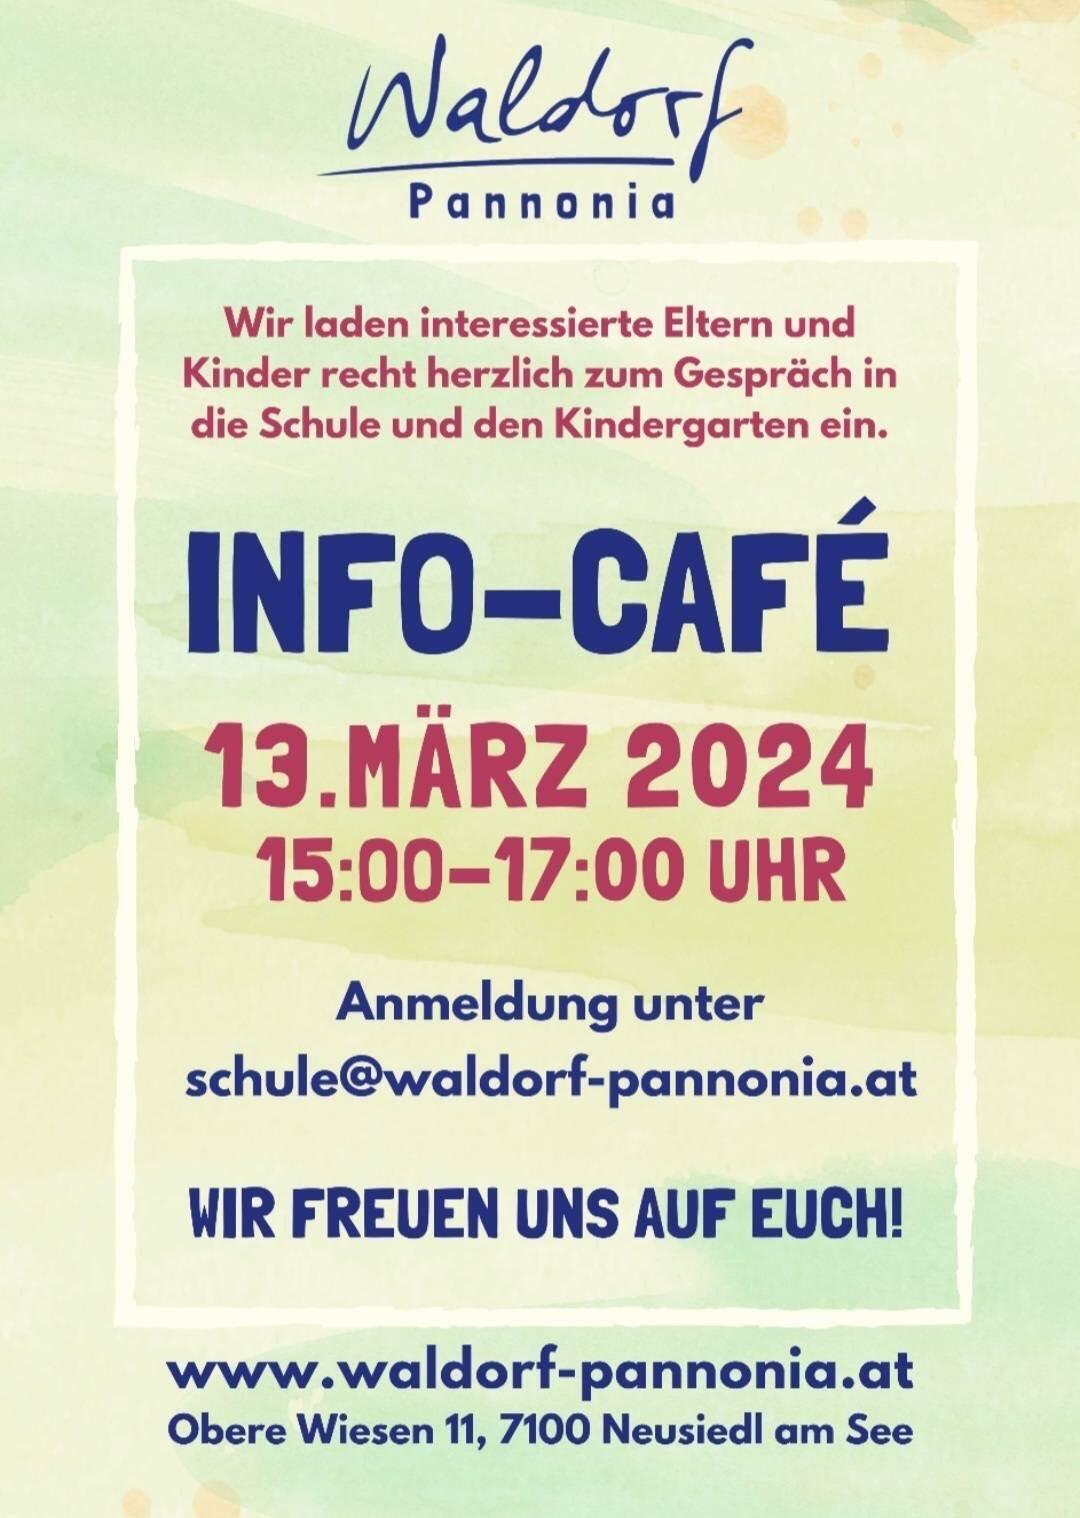 Info-Café 13. März 2024, 15-17 Uhr. Anmeldung unter schule@waldorf-pannonia.at